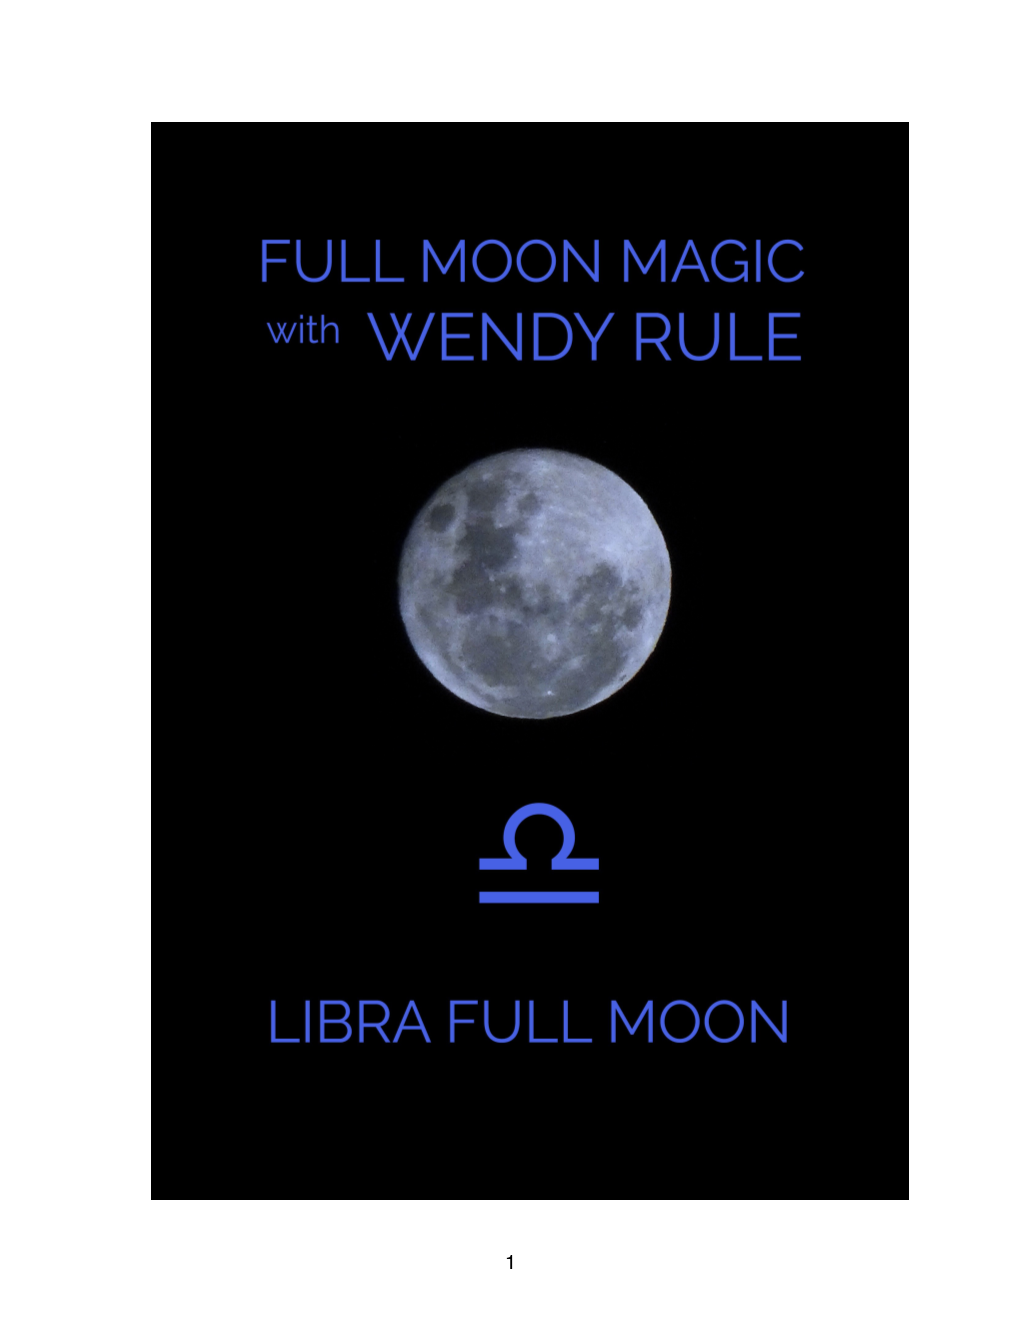 Libra Full Moon Magic